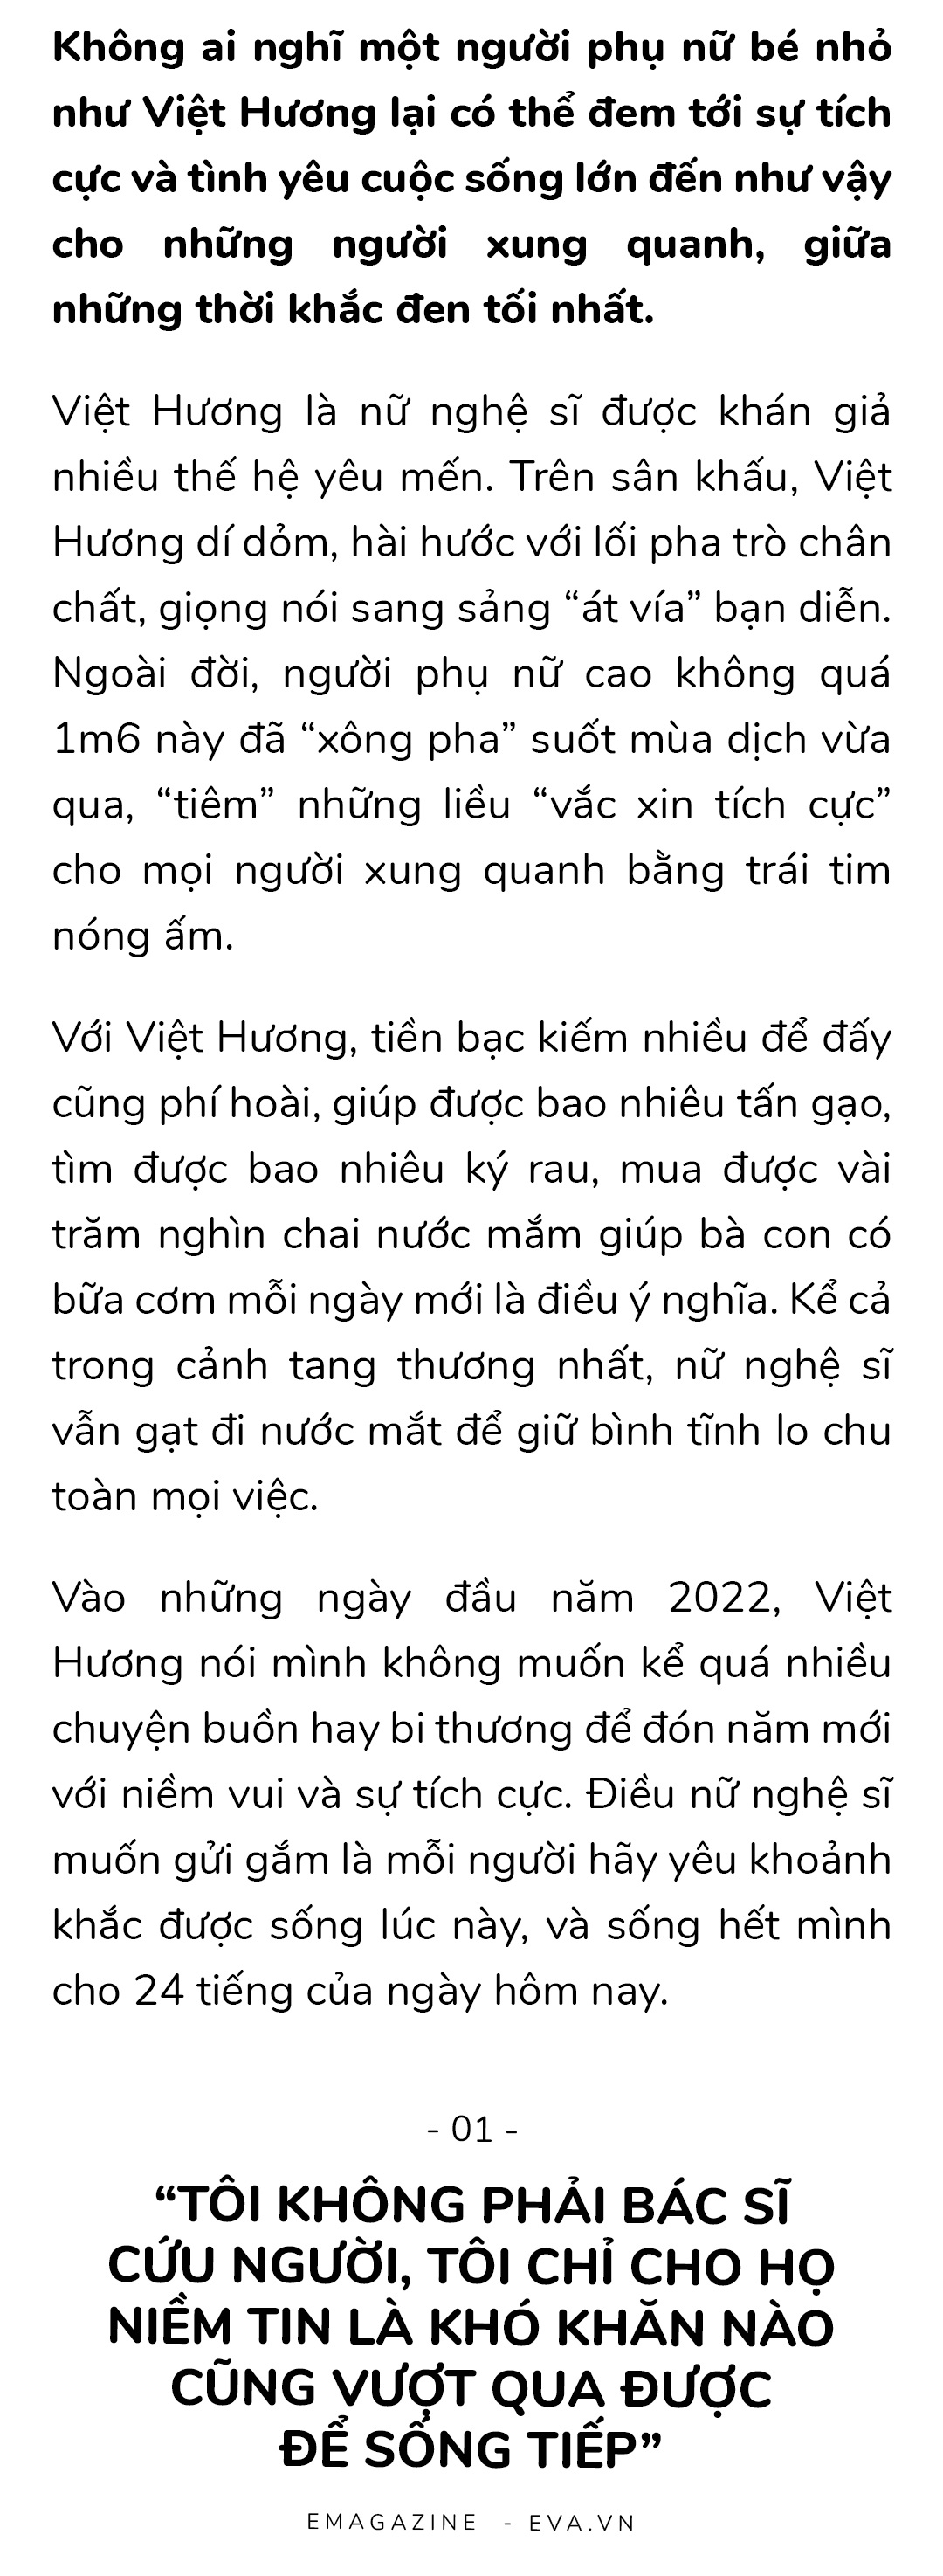 Chồng Việt Hương cảm ơn vợ vì thuyết phục mình về nước, gần 20 năm nói yêu trước khi ngủ - 4